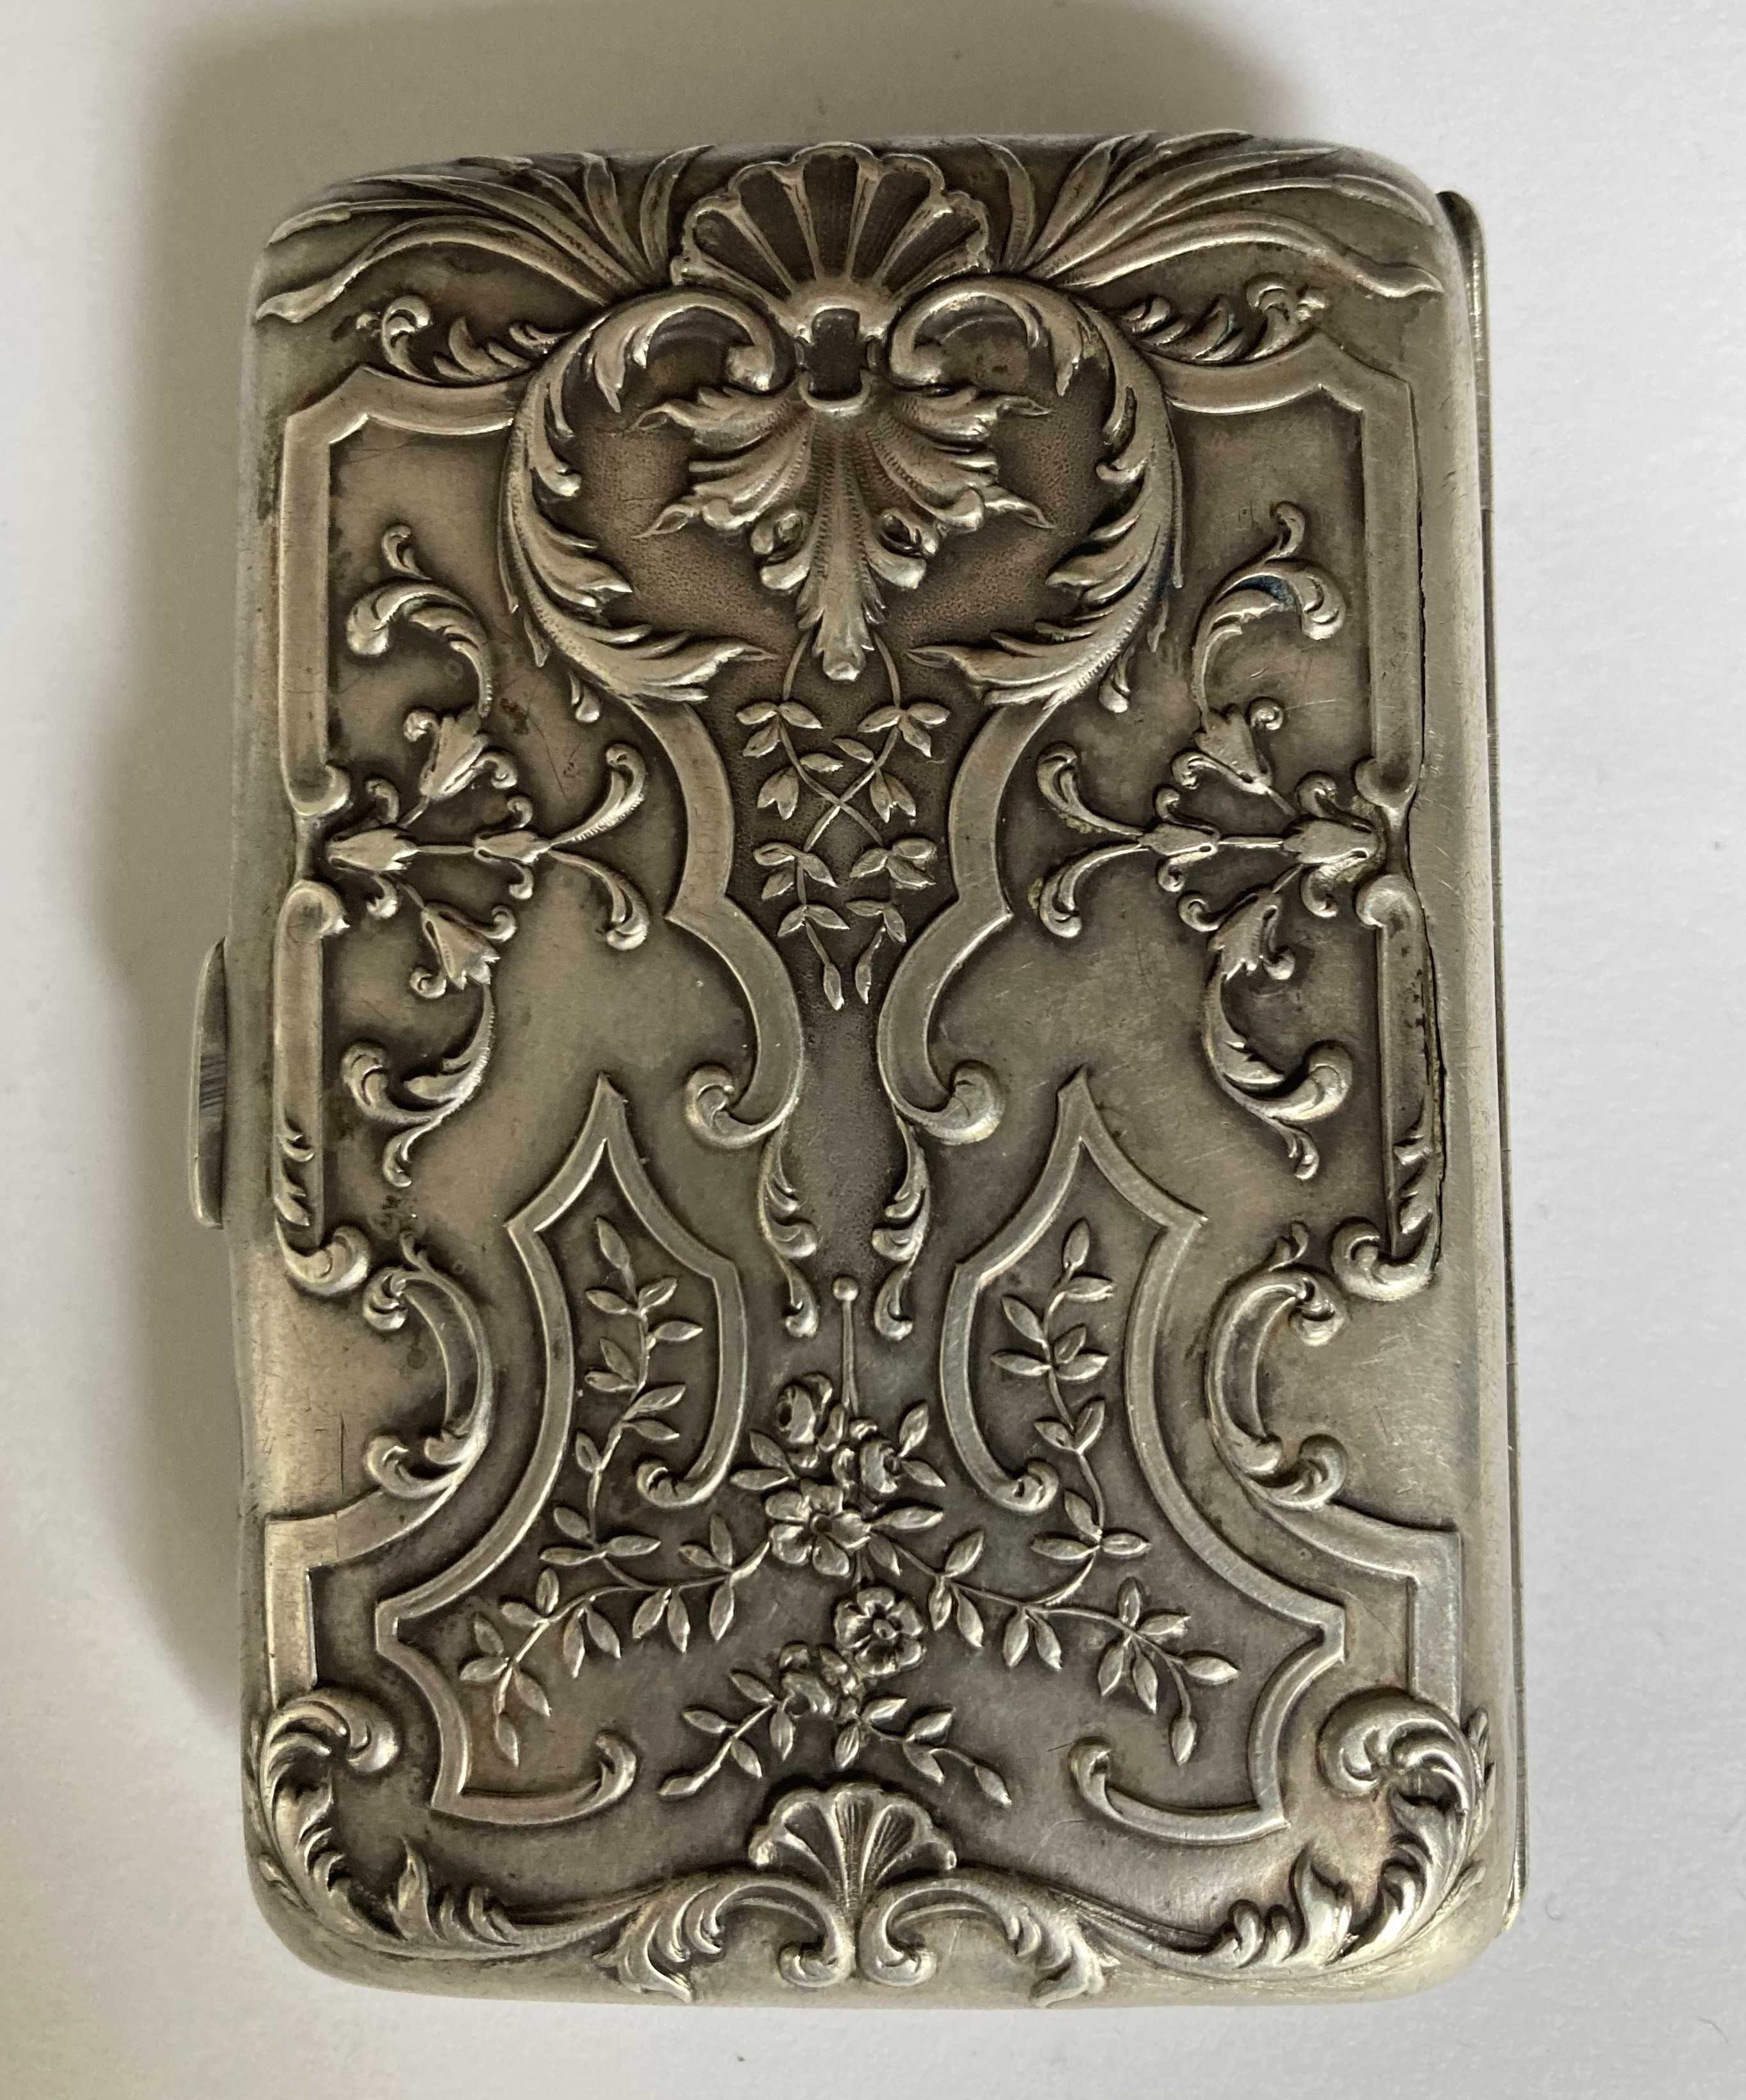 Tabachera din argint cu model floral reliefat